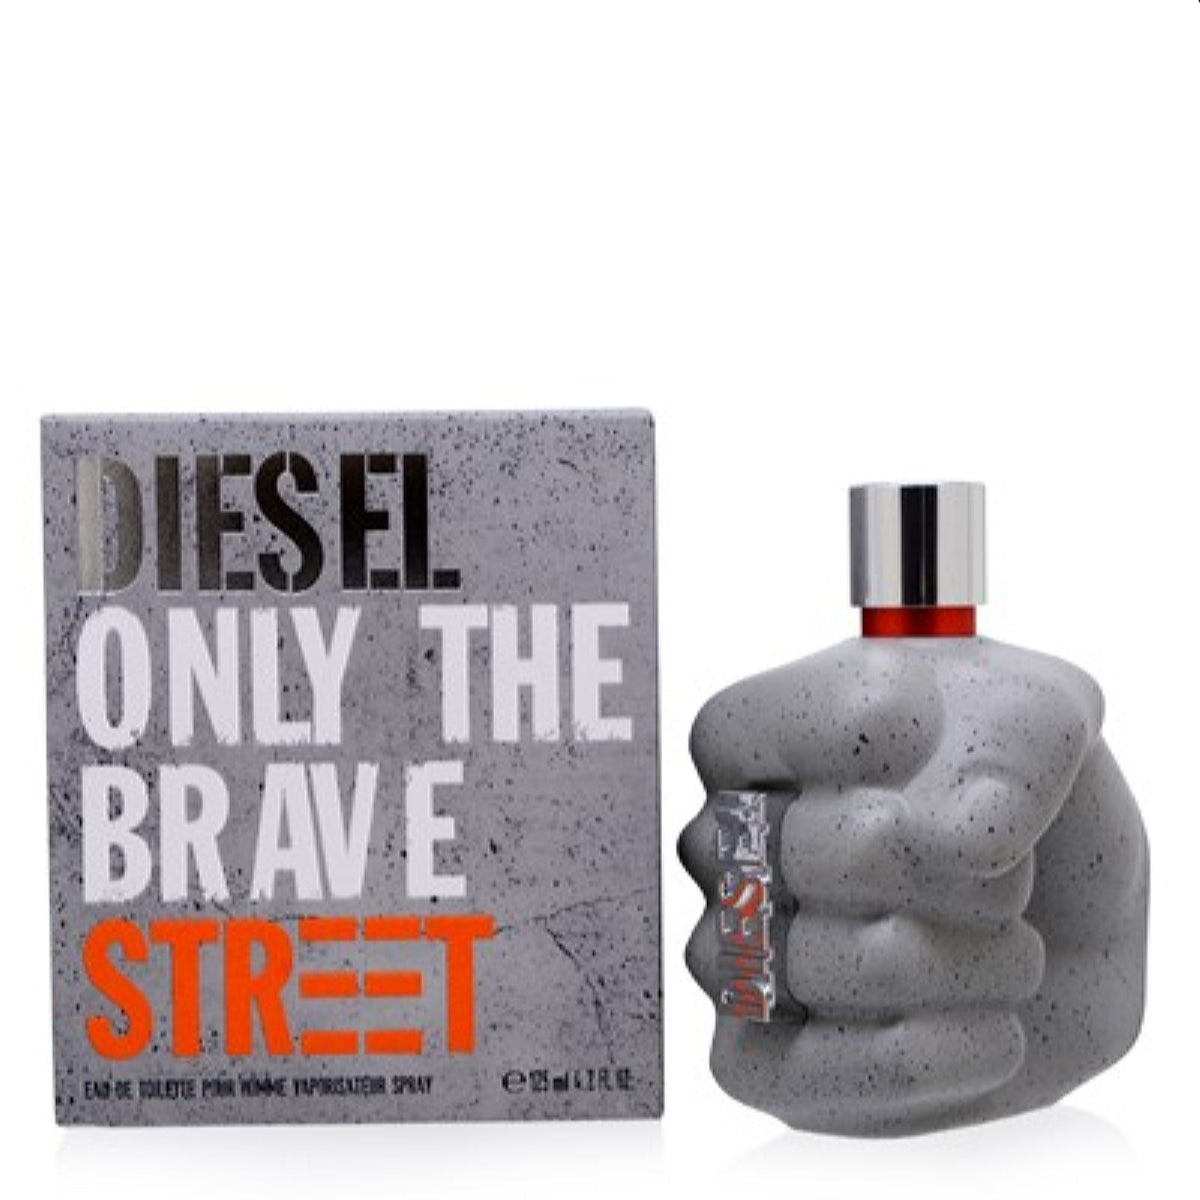 Only The Brave Street Diesel Edt Spray 4.2 Oz (125 Ml) For Men  